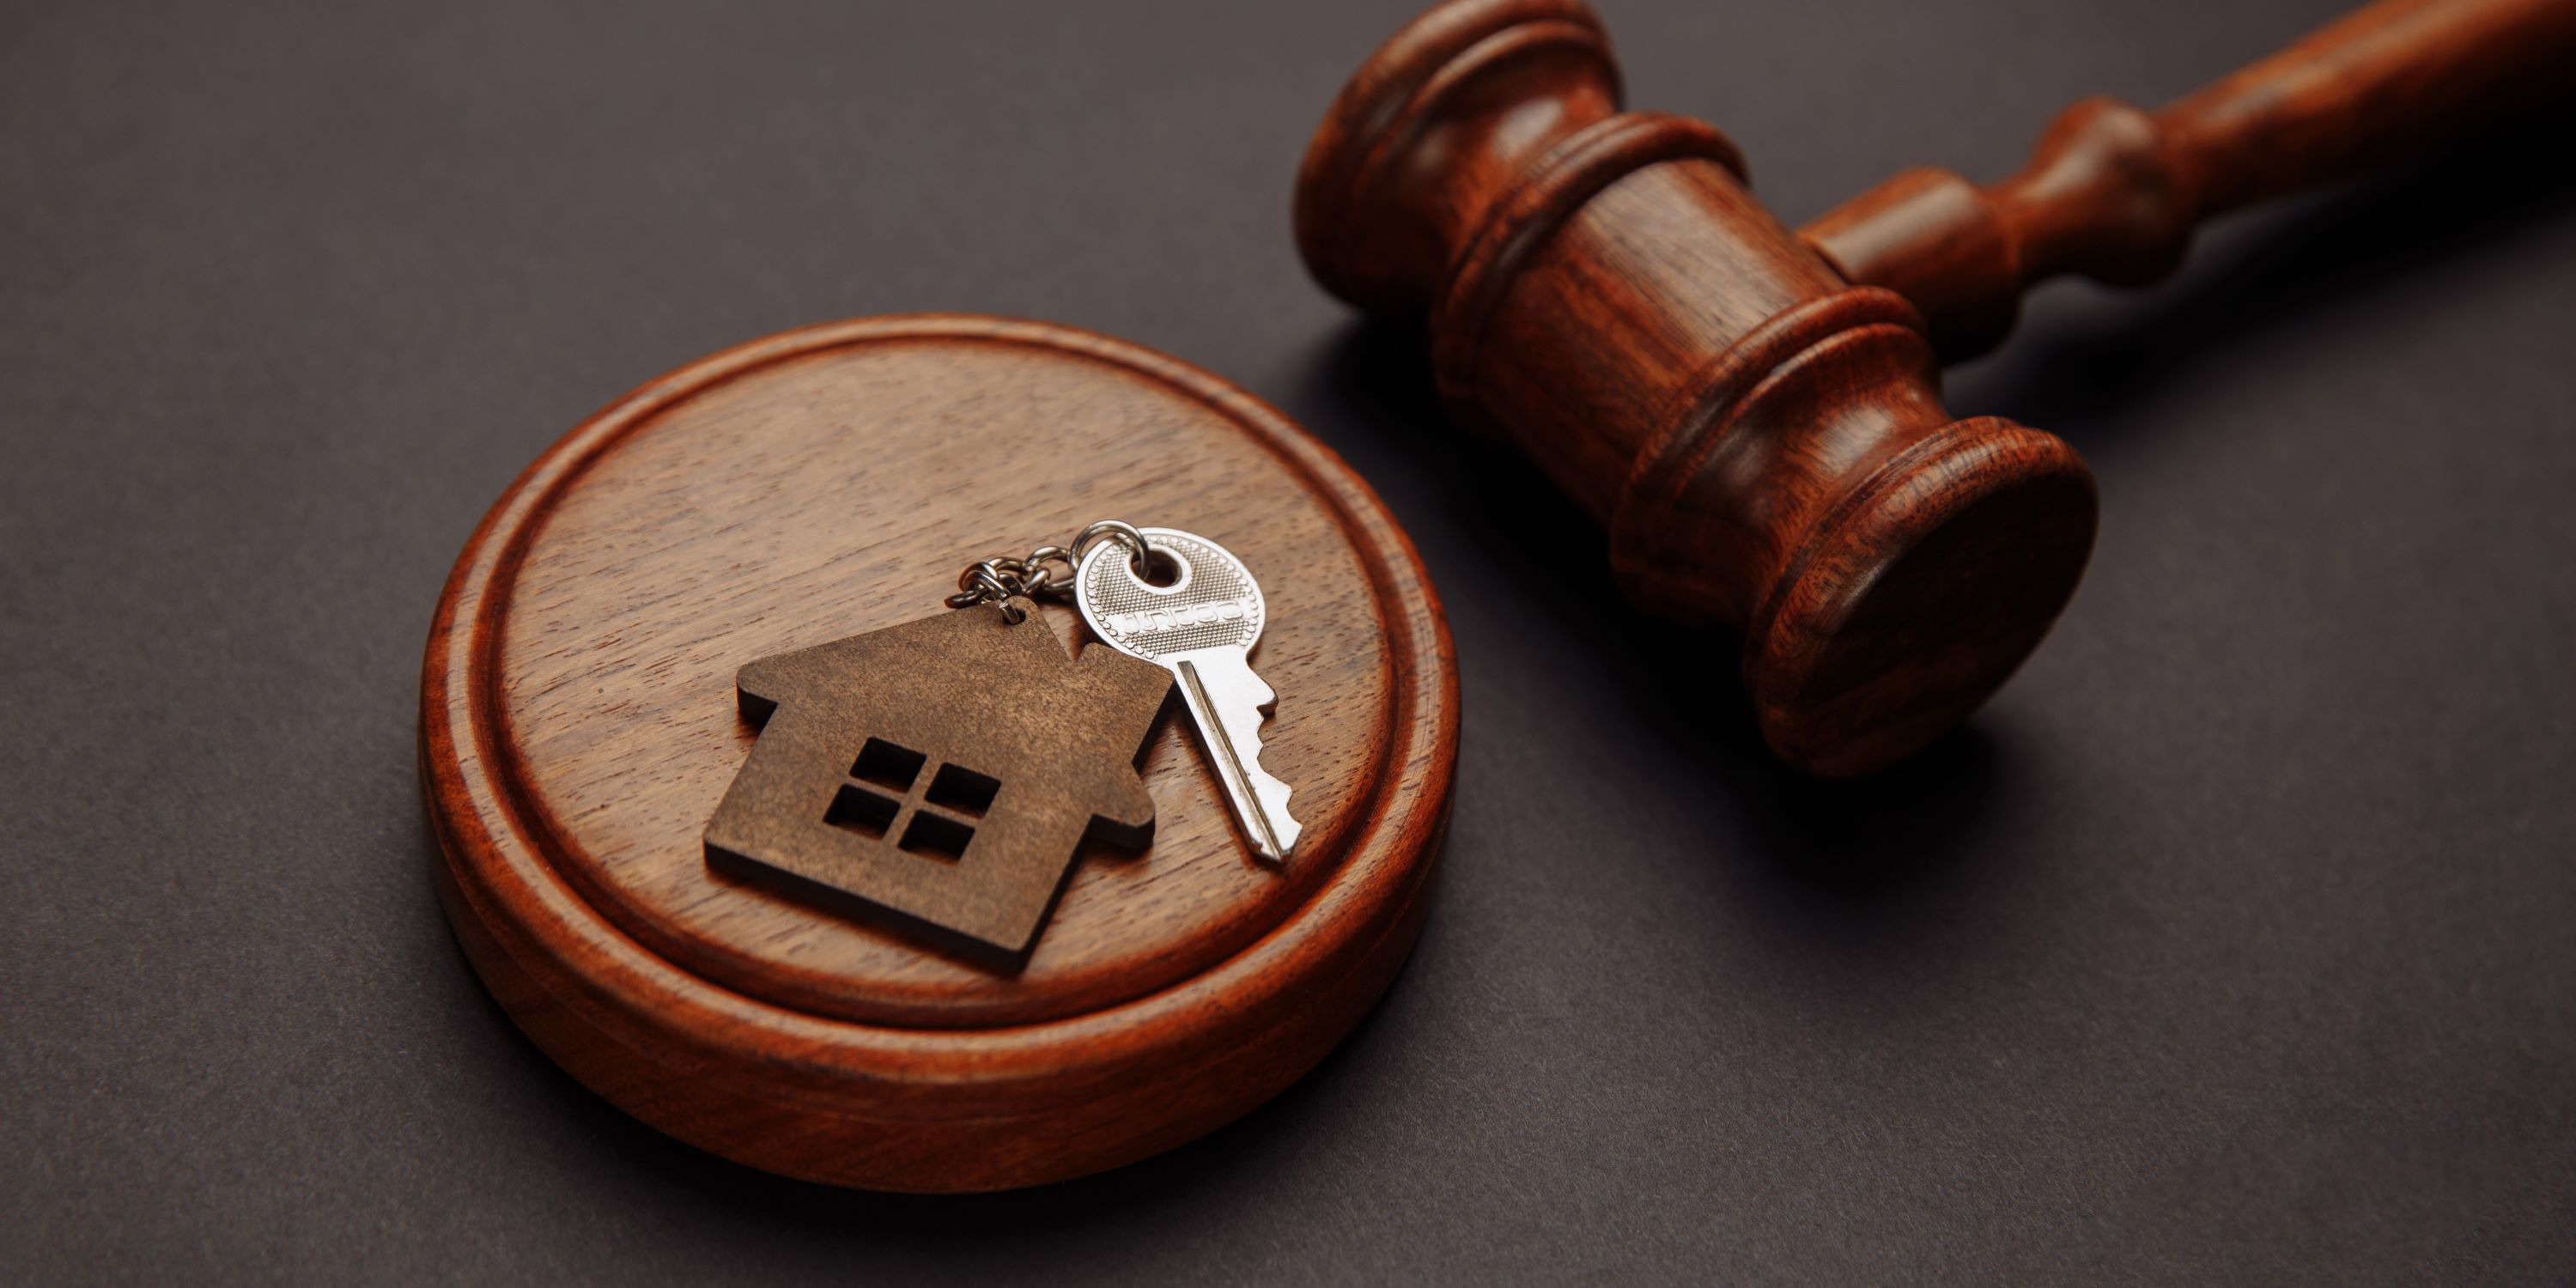 ¿Qué pasa si un aval no responde financieramente? El arrendatario puede tomar acciones legales.